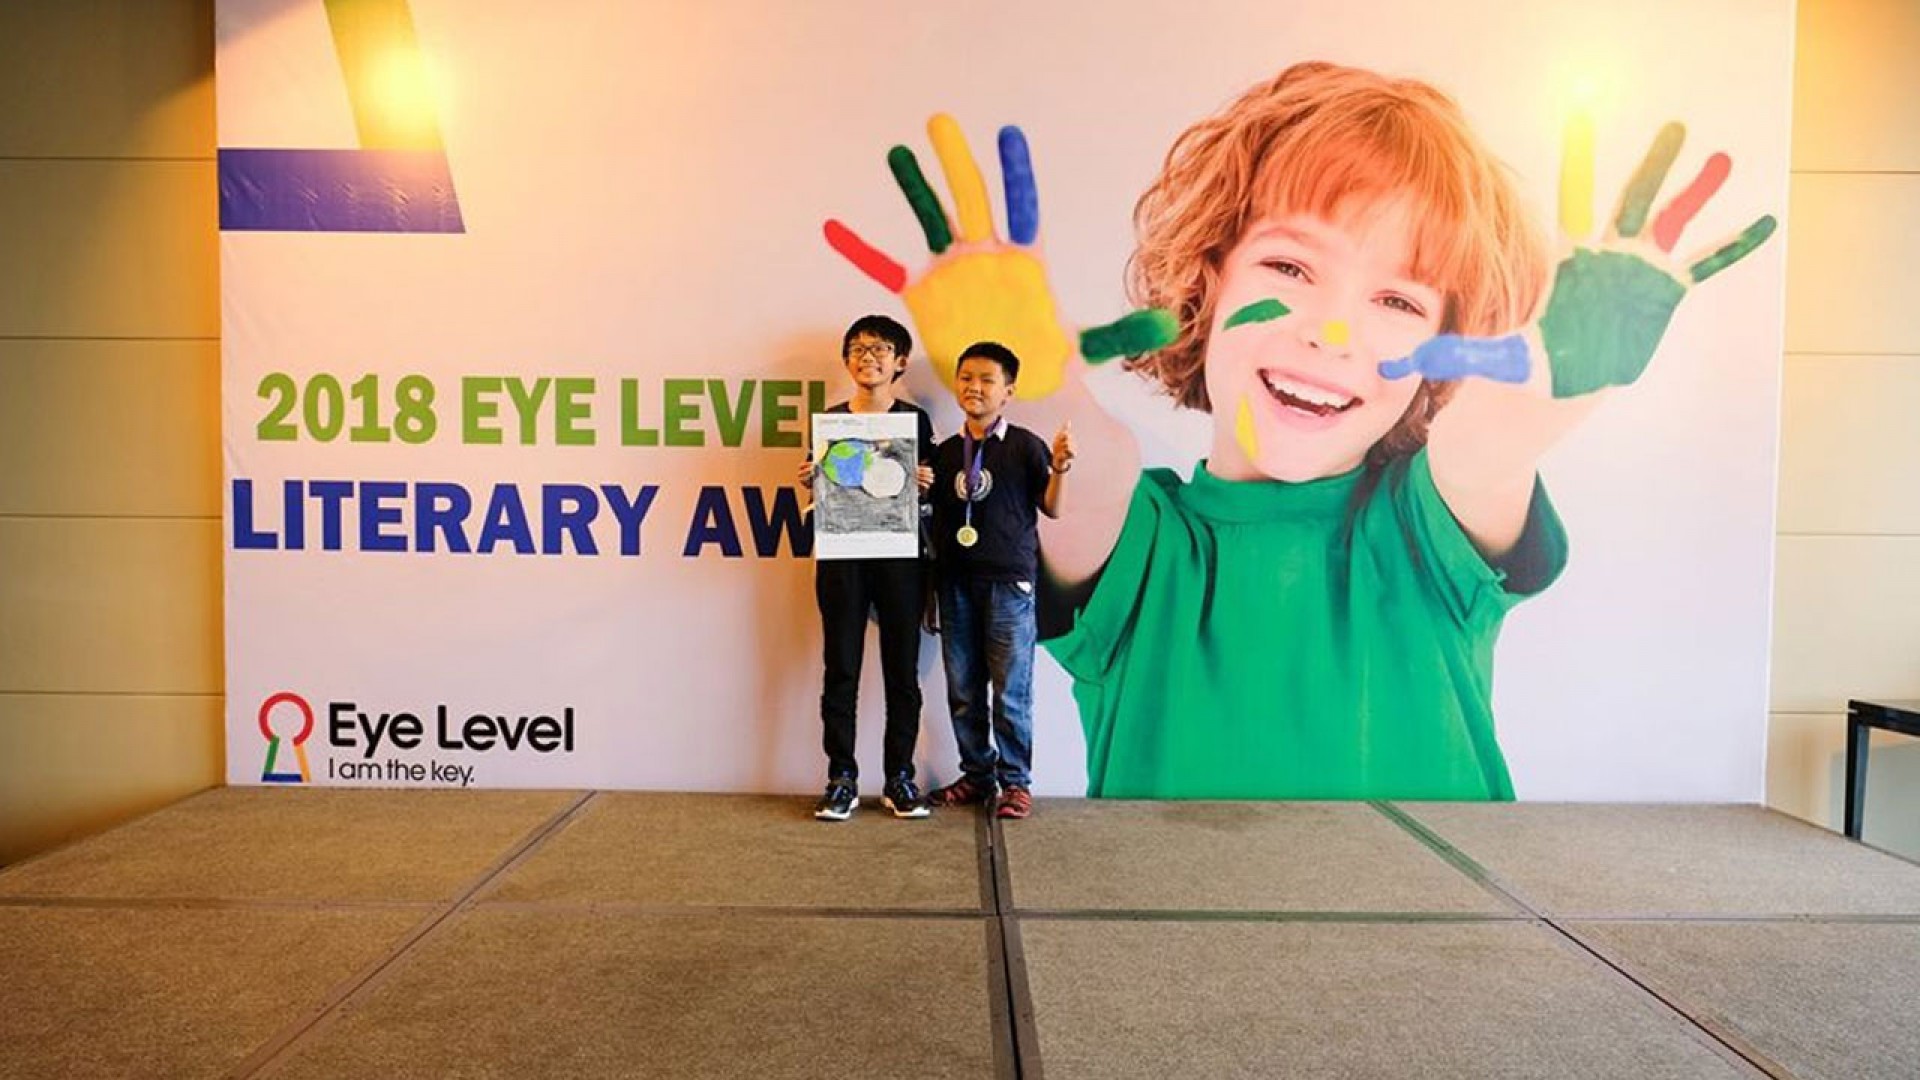 Phương pháp dạy ở Eye Level – Chìa khóa khai phá tiềm năng ở trẻ